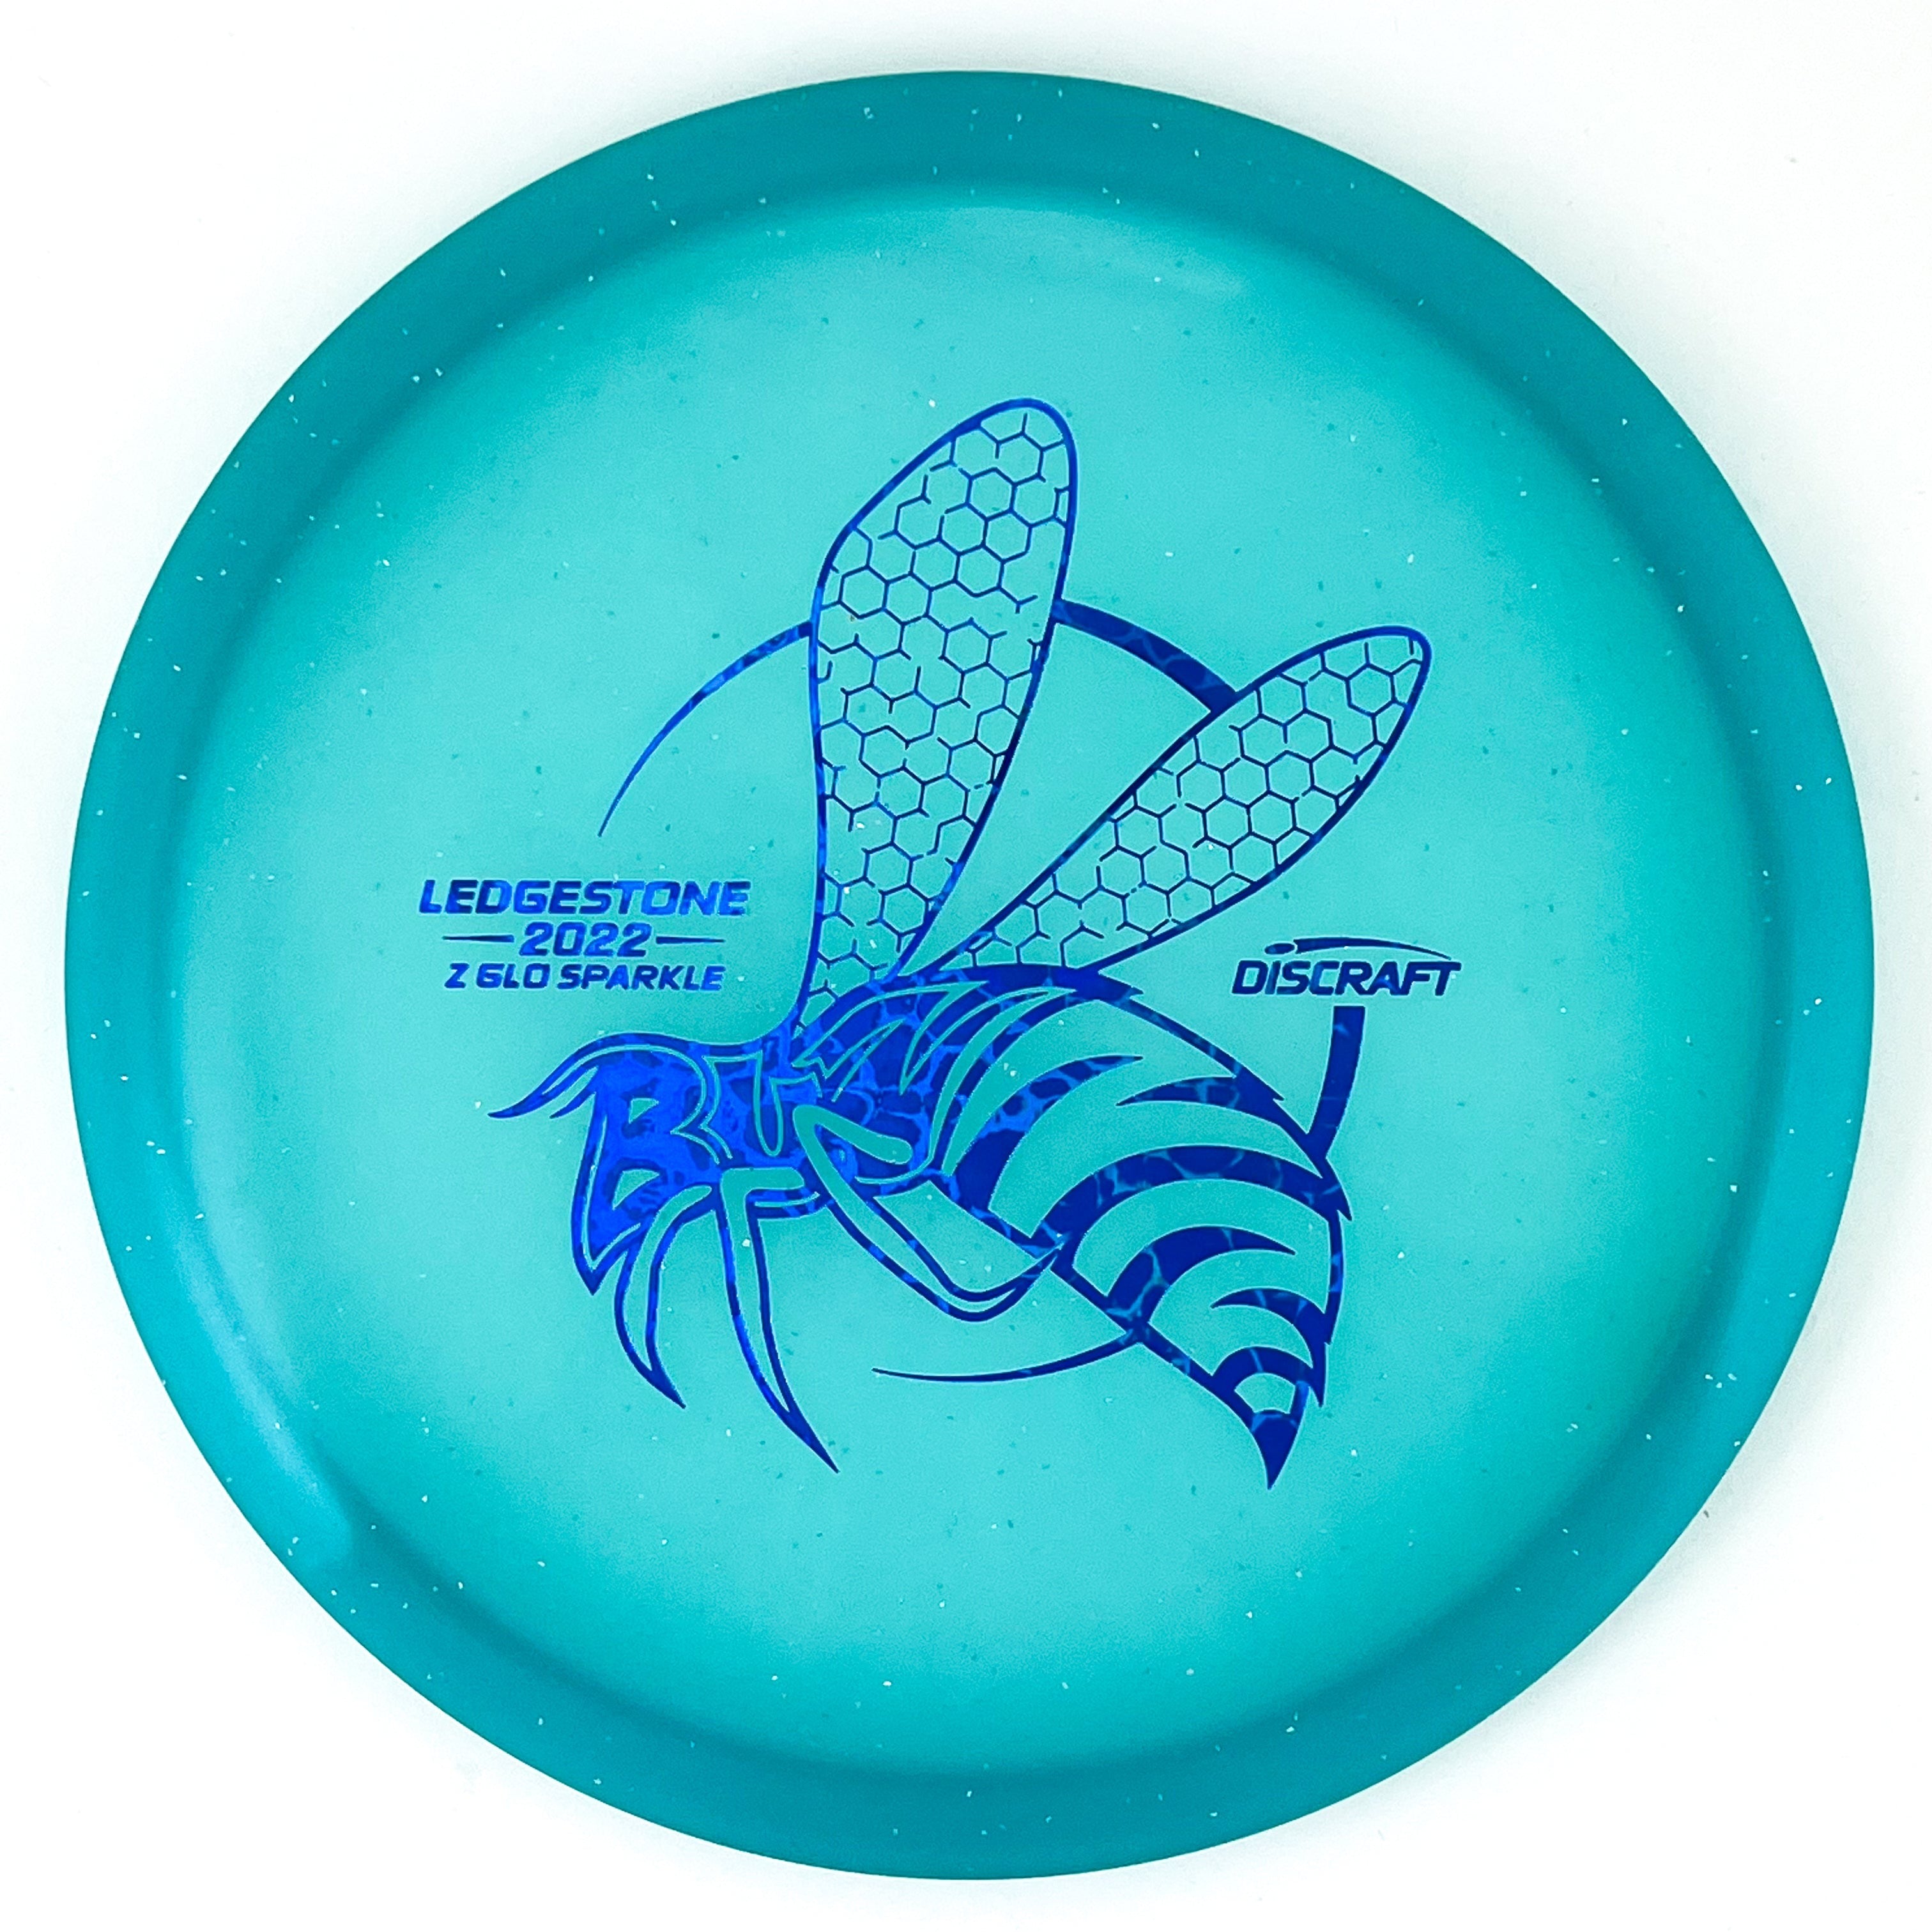 2022 Ledgestone Edition Z Glo Sparkle Buzzz midrange disc golf disc by Discraft.